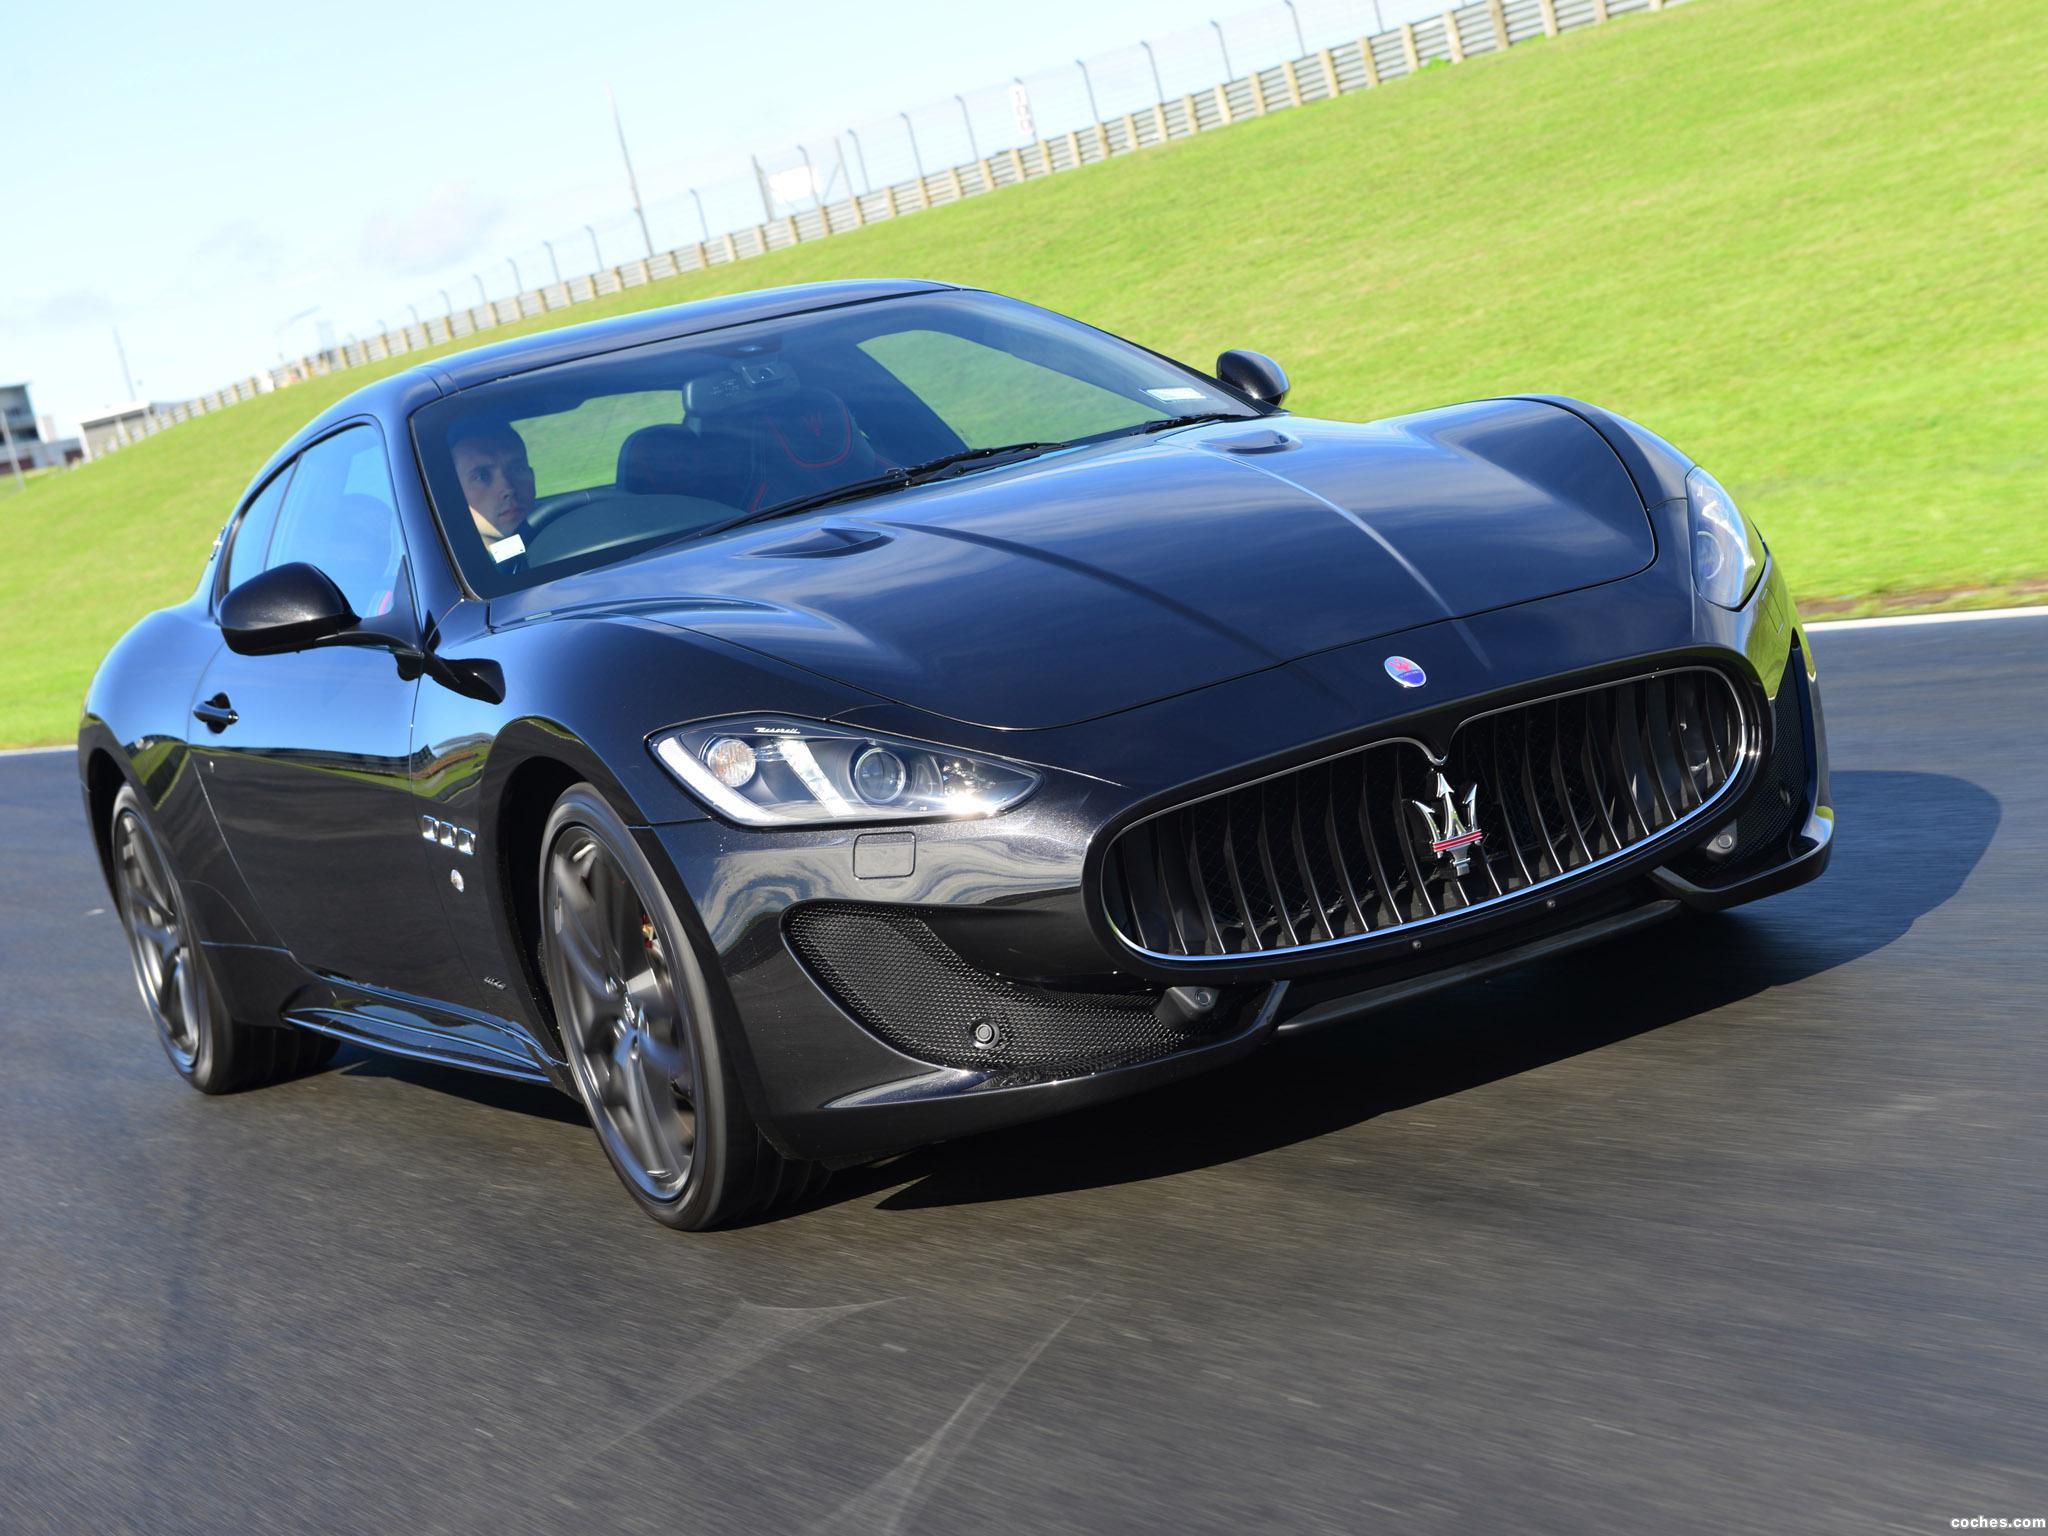 Мазерати производитель. Мазерати Гранд Туризмо. Maserati 2015. Maserati GRANTURISMO S 2015. Мазерати Пининфарина.